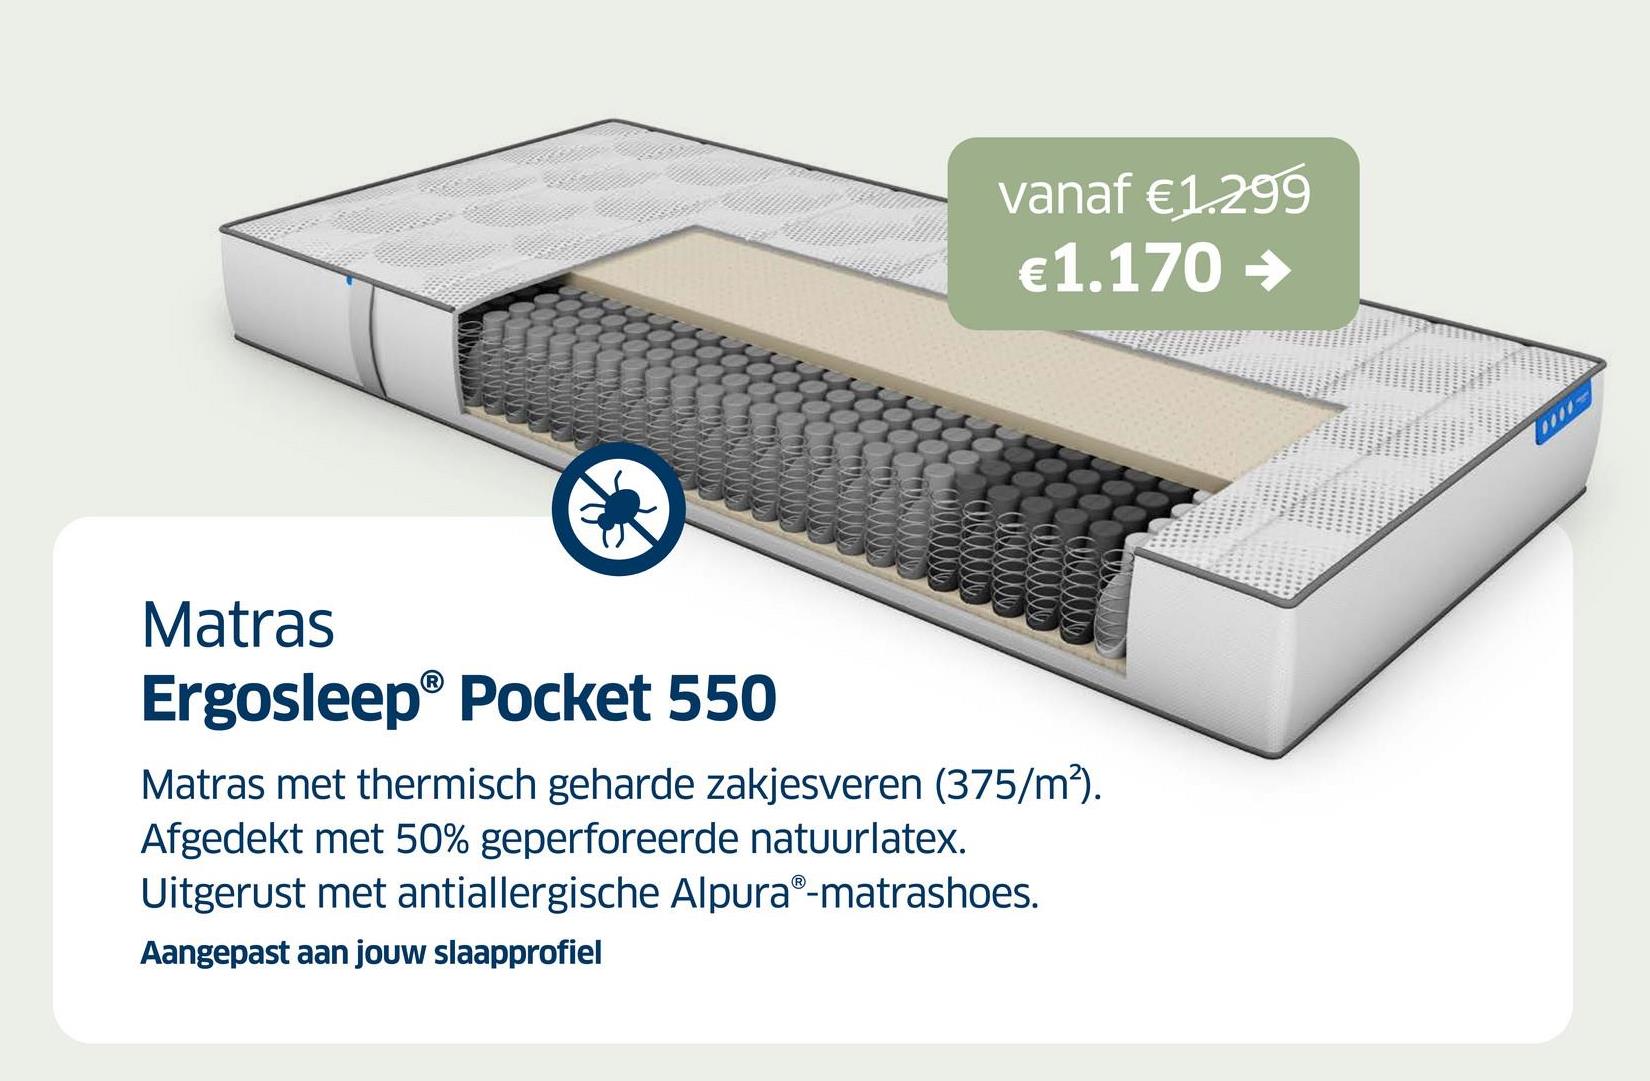 vanaf €1.299
€1.170 →
Matras
Ergosleep® Pocket 550
Matras met thermisch geharde zakjesveren (375/m²).
Afgedekt met 50% geperforeerde natuurlatex.
Uitgerust met antiallergische AlpuraⓇ-matrashoes.
Aangepast aan jouw slaapprofiel